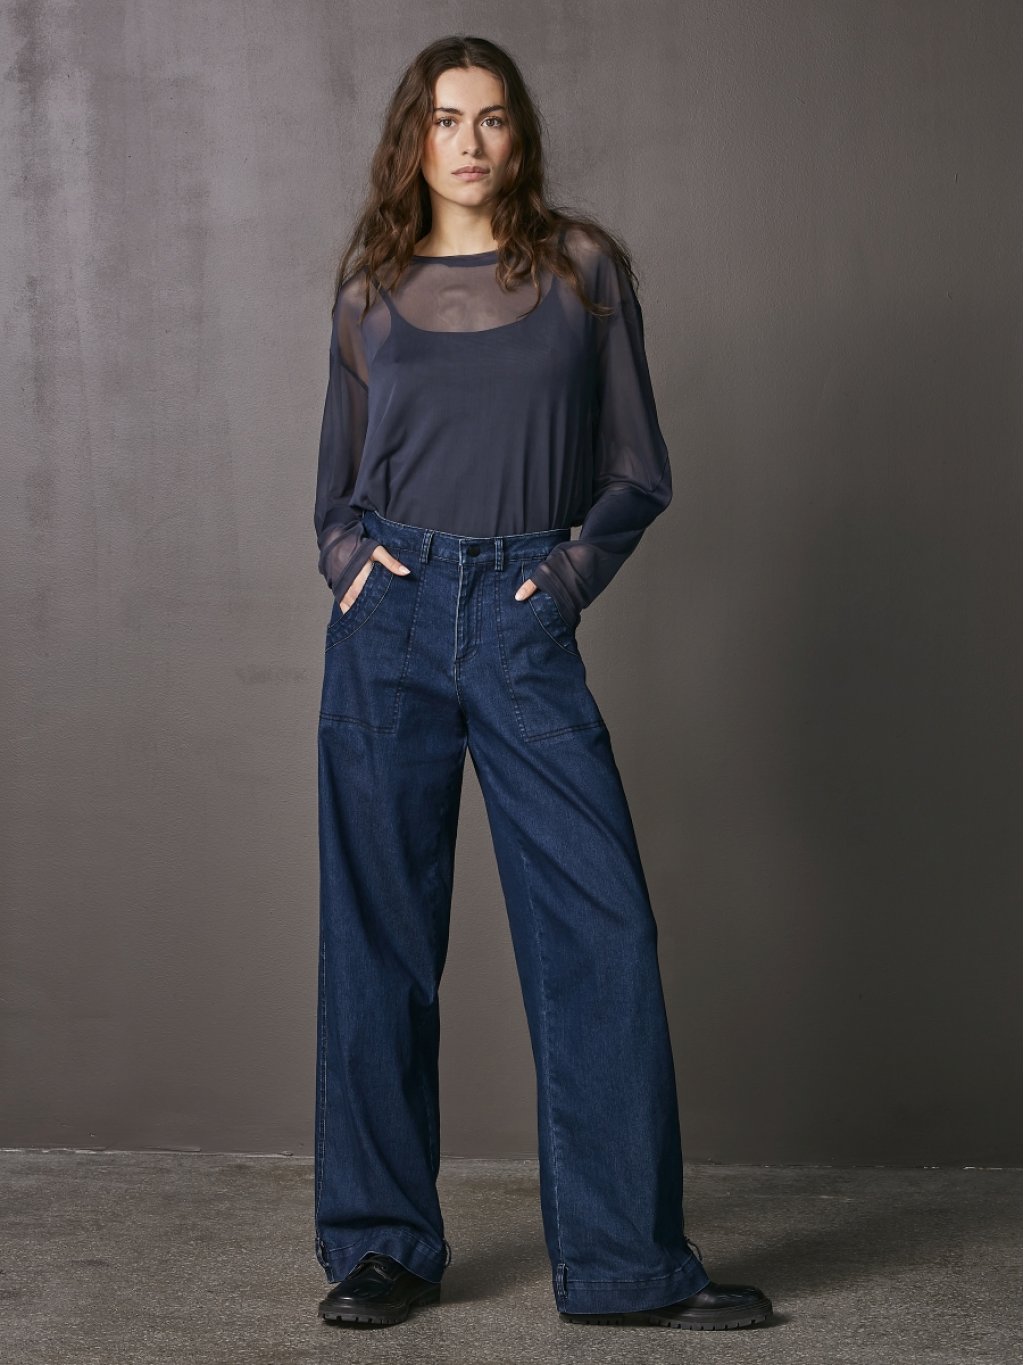 Kalhoty NU Denmark 7927-12 tmavě modré džíny 